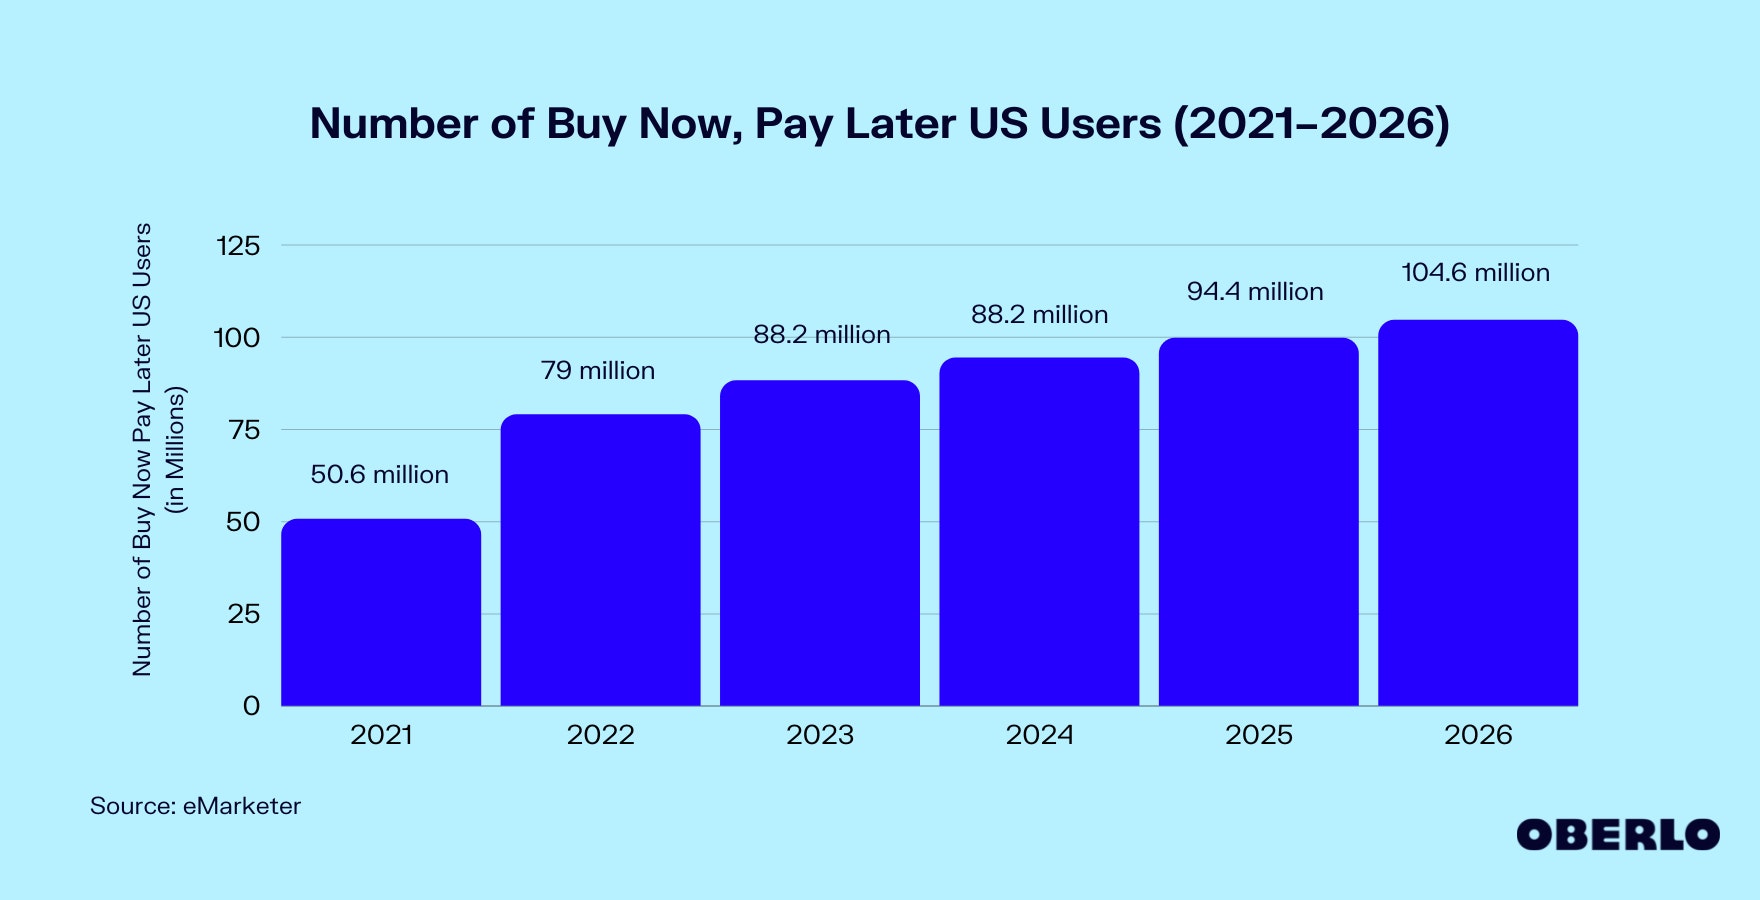 先买后付的美国用户数量图表(2021-2026年)